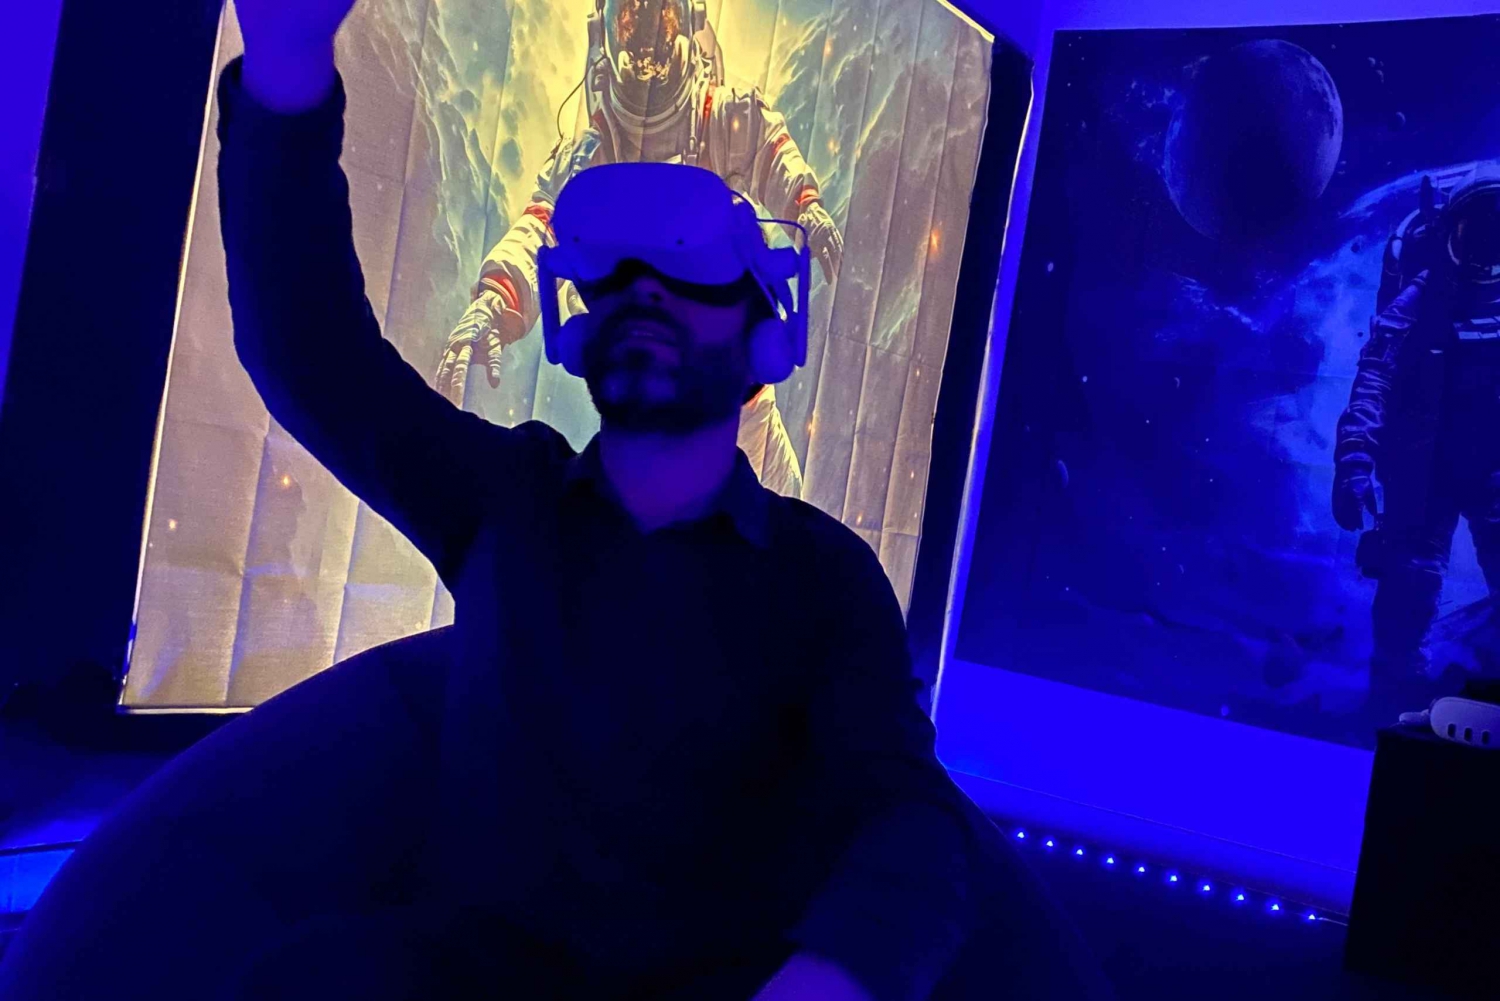 Tule astronautiksi ainutlaatuinen VR-kokemus vain Barcelonassa